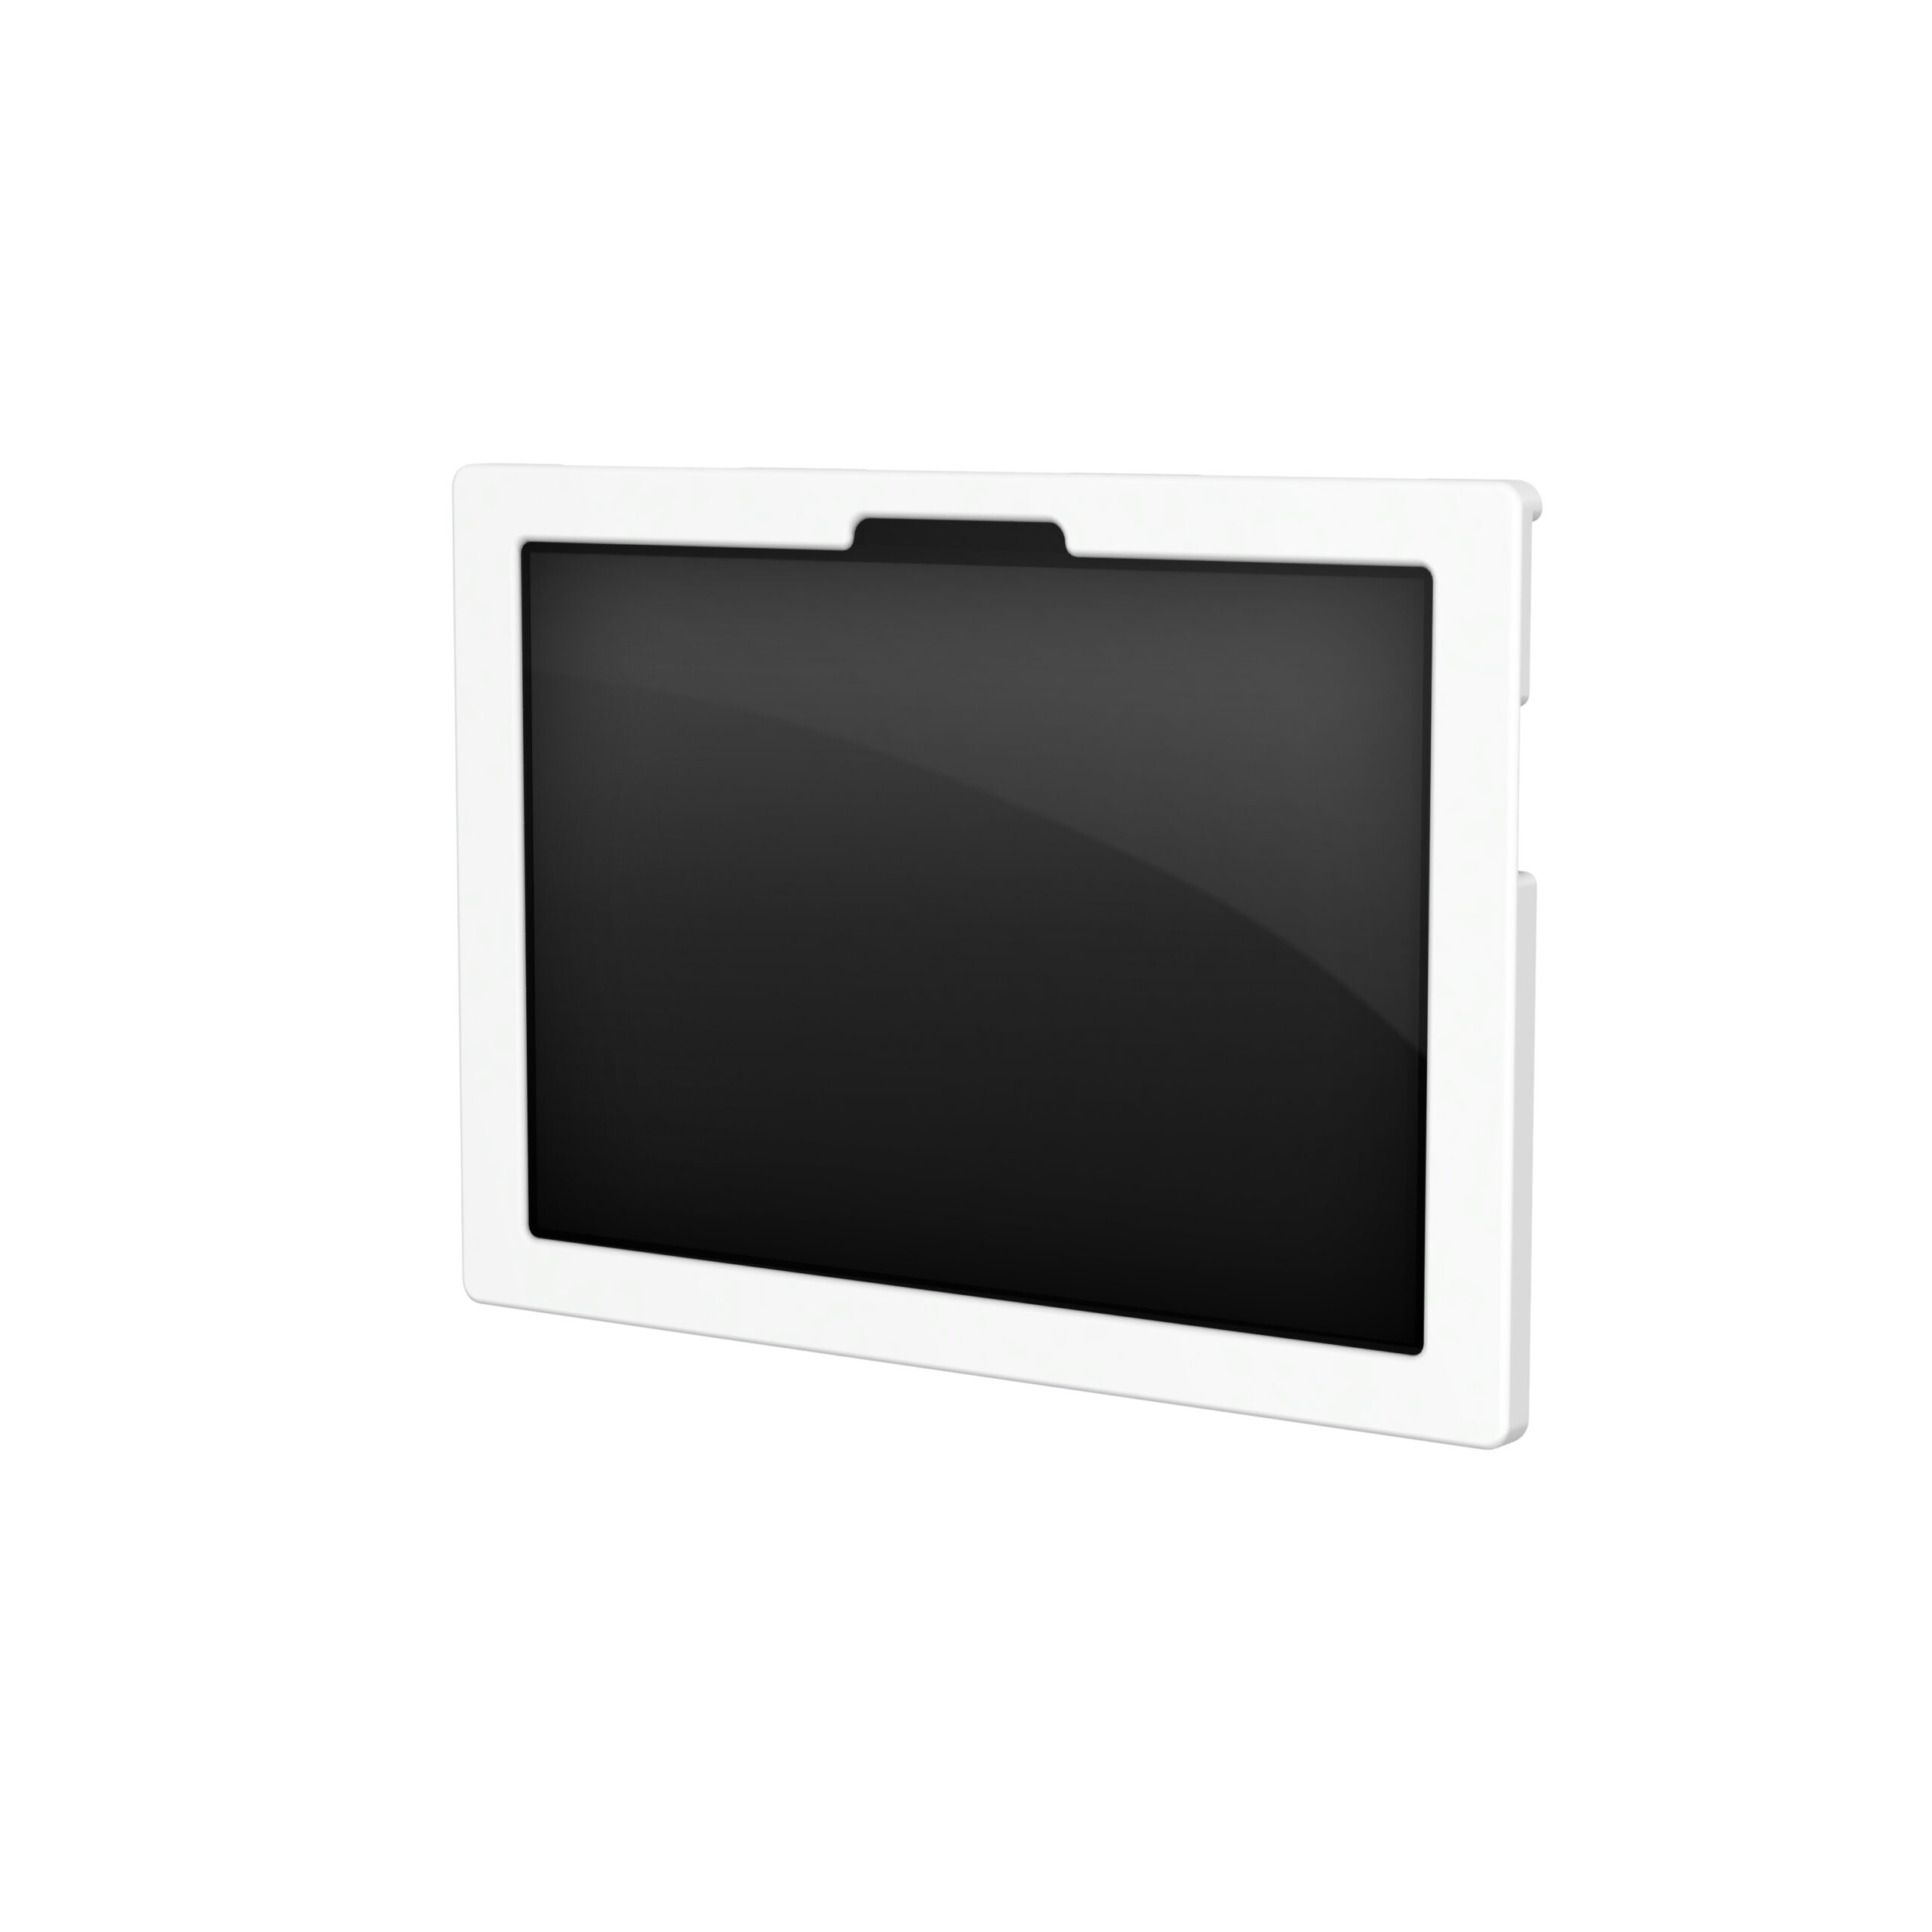 GCX hires MS 0001 01 Surface Pad